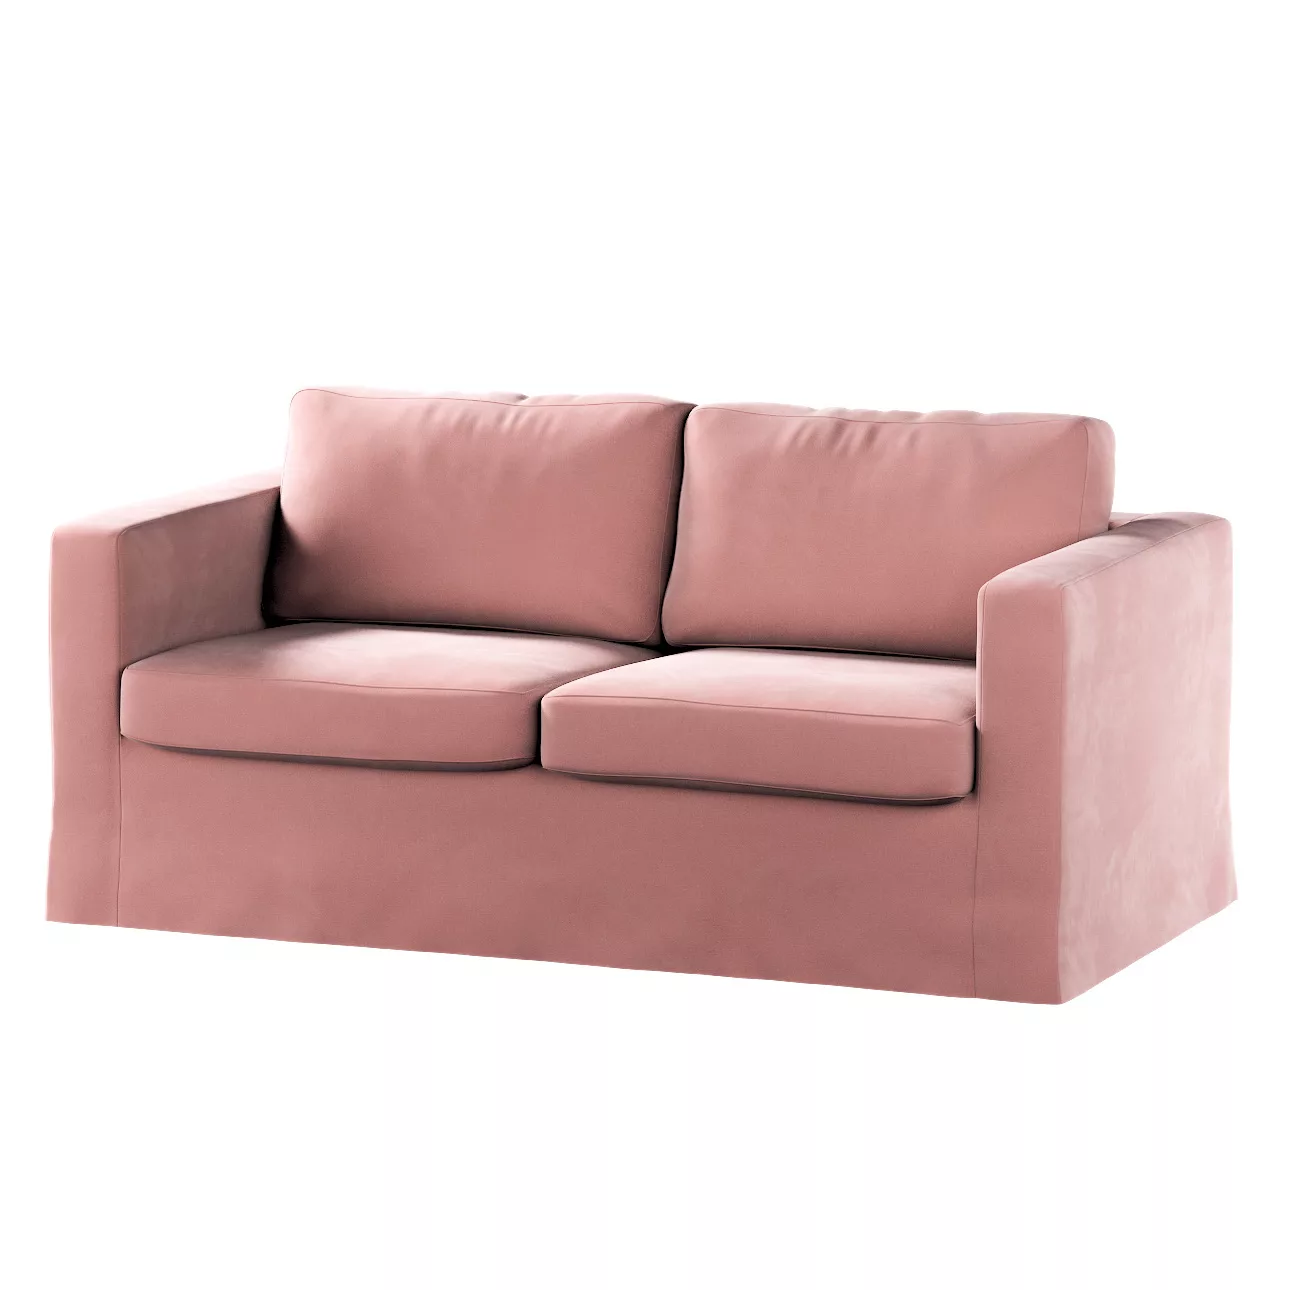 Bezug für Karlstad 2-Sitzer Sofa nicht ausklappbar, lang, koralle, Sofahuss günstig online kaufen